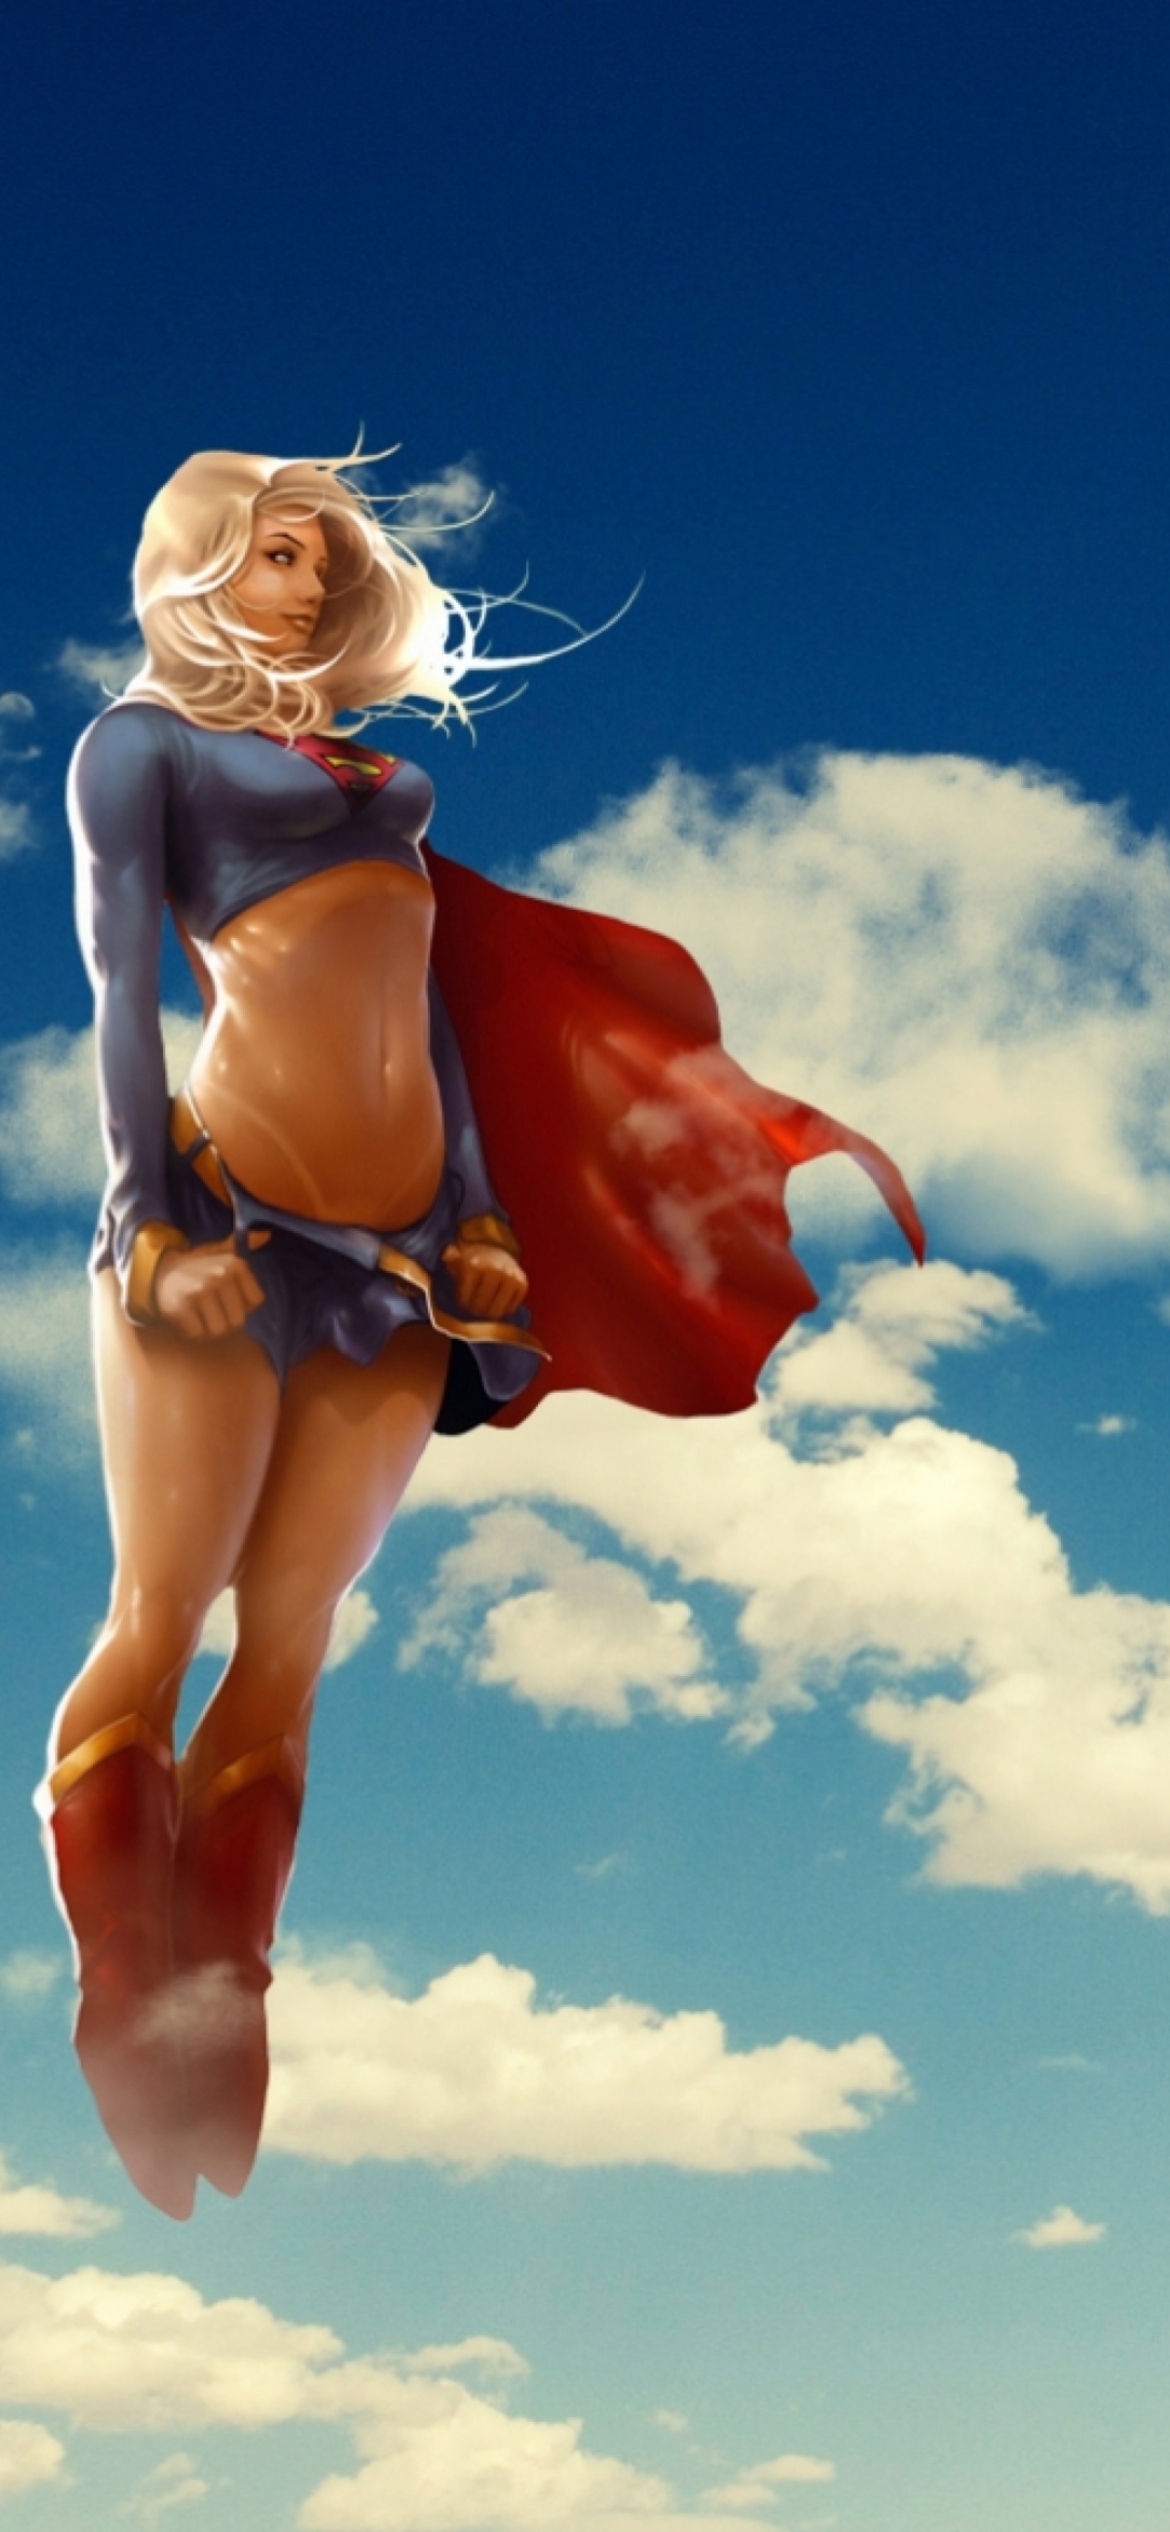 Super Woman wallpaper 1170x2532